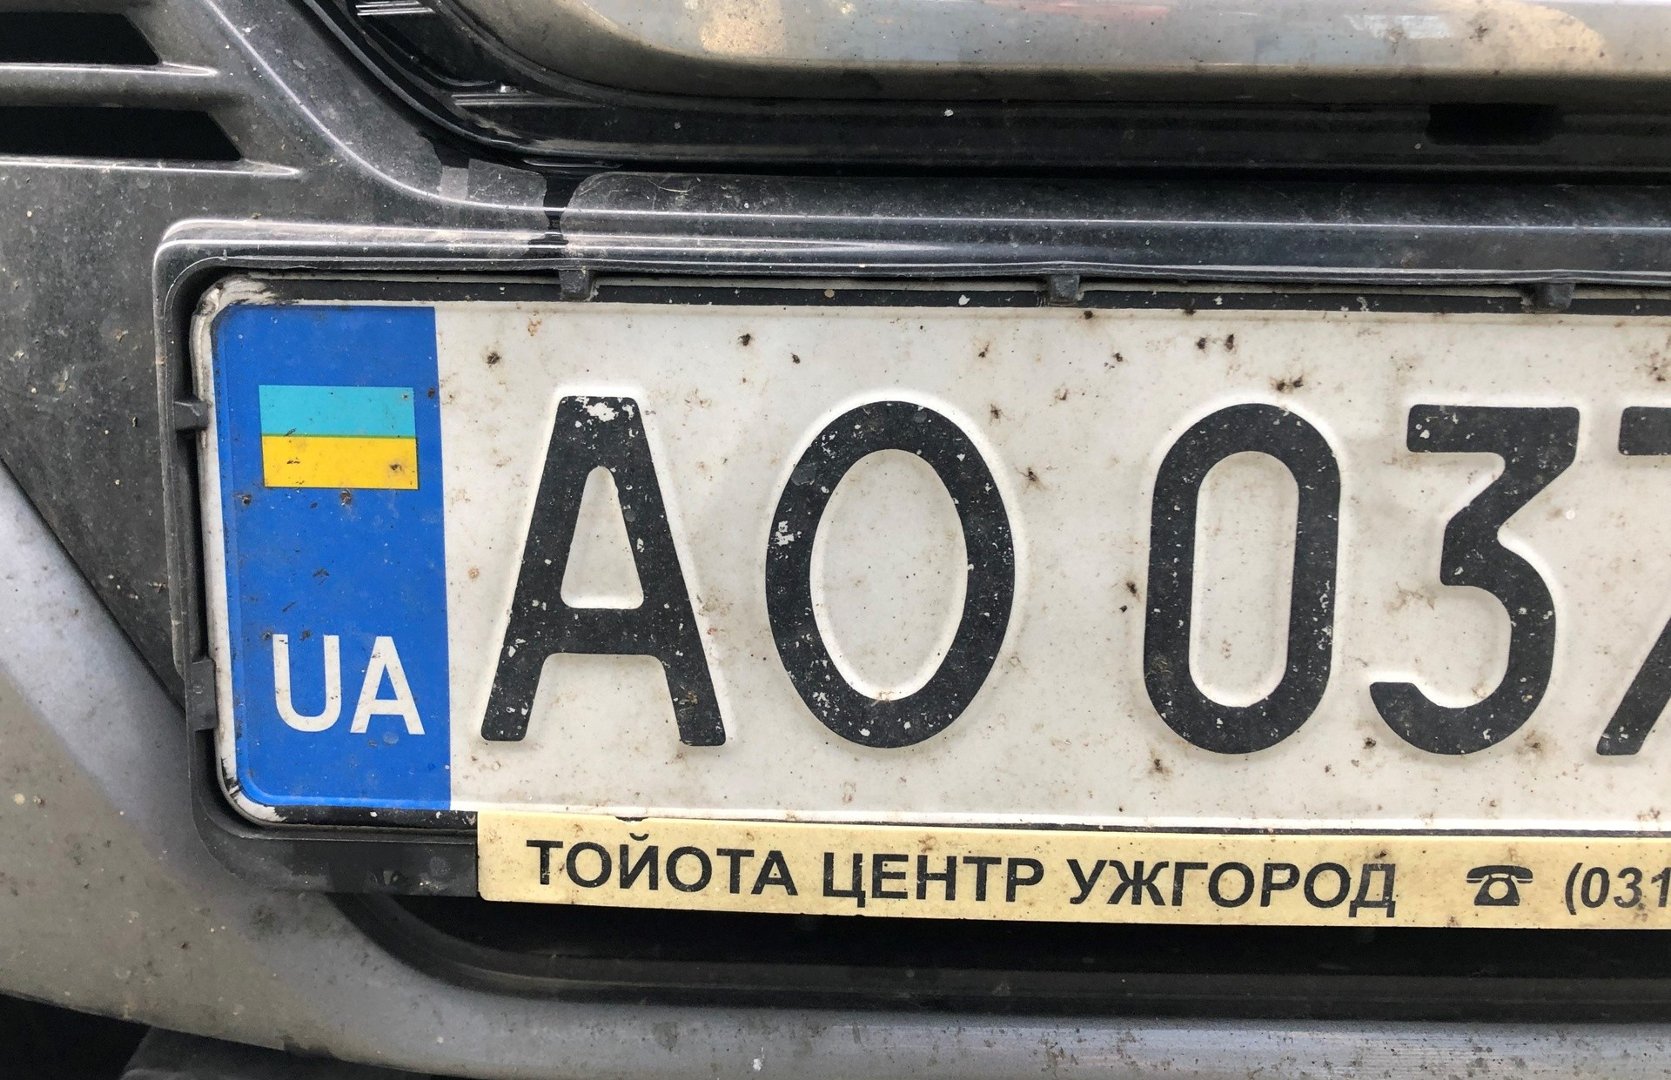 Ukraińskie tablice rejestracyjne. Czy wiesz z jakiego obwodu lub miasta  pochodzi dany pojazd? | Motofakty